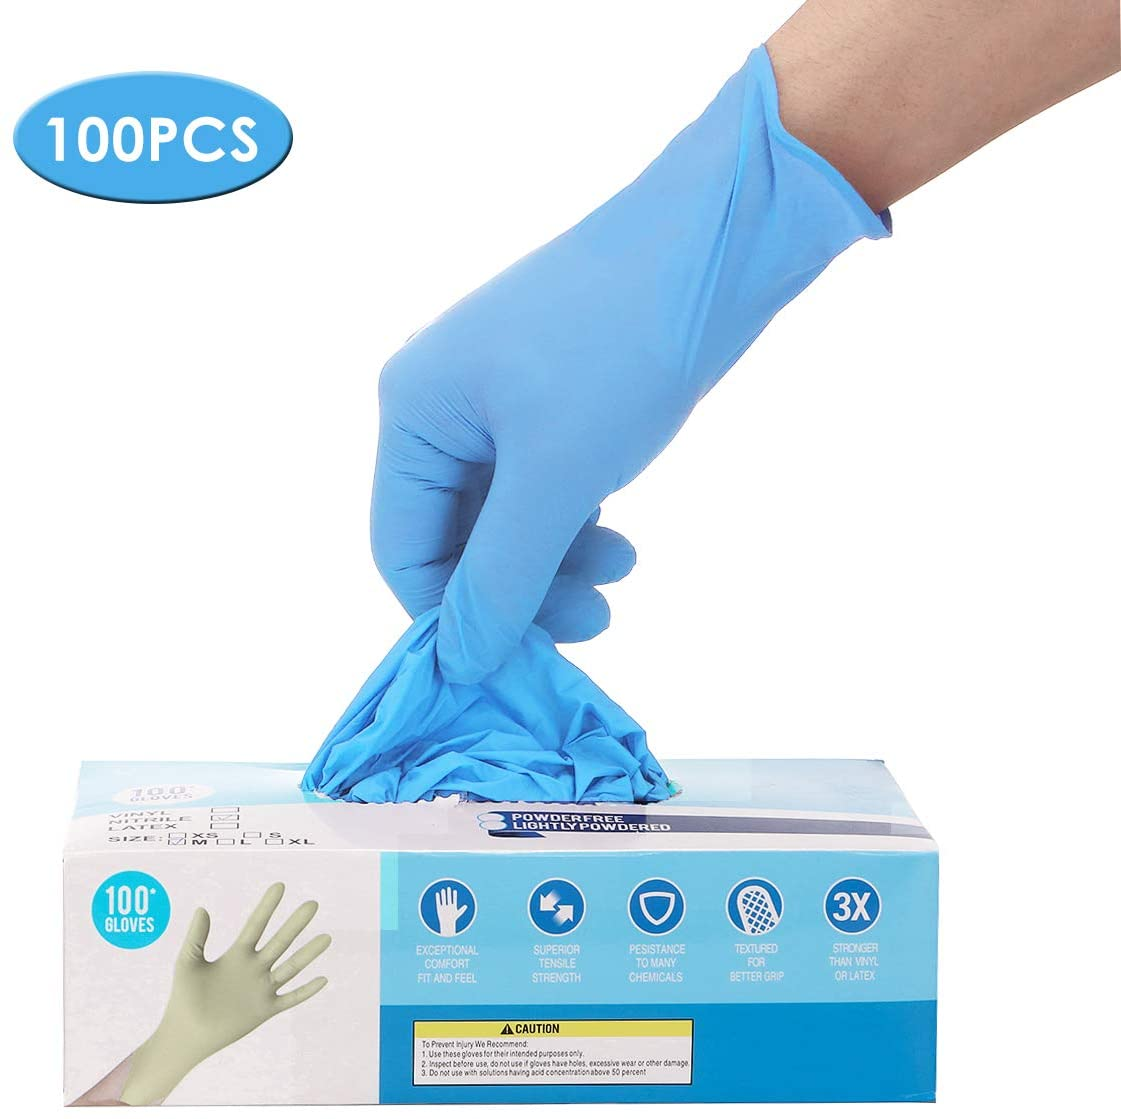 IPRee® 100 Stück Nitril-Einweghandschuhe ohne Pulver, ohne Latex, sterile Handschuhe für Picknick, Lebensmittelhygiene und Hausreinigung.